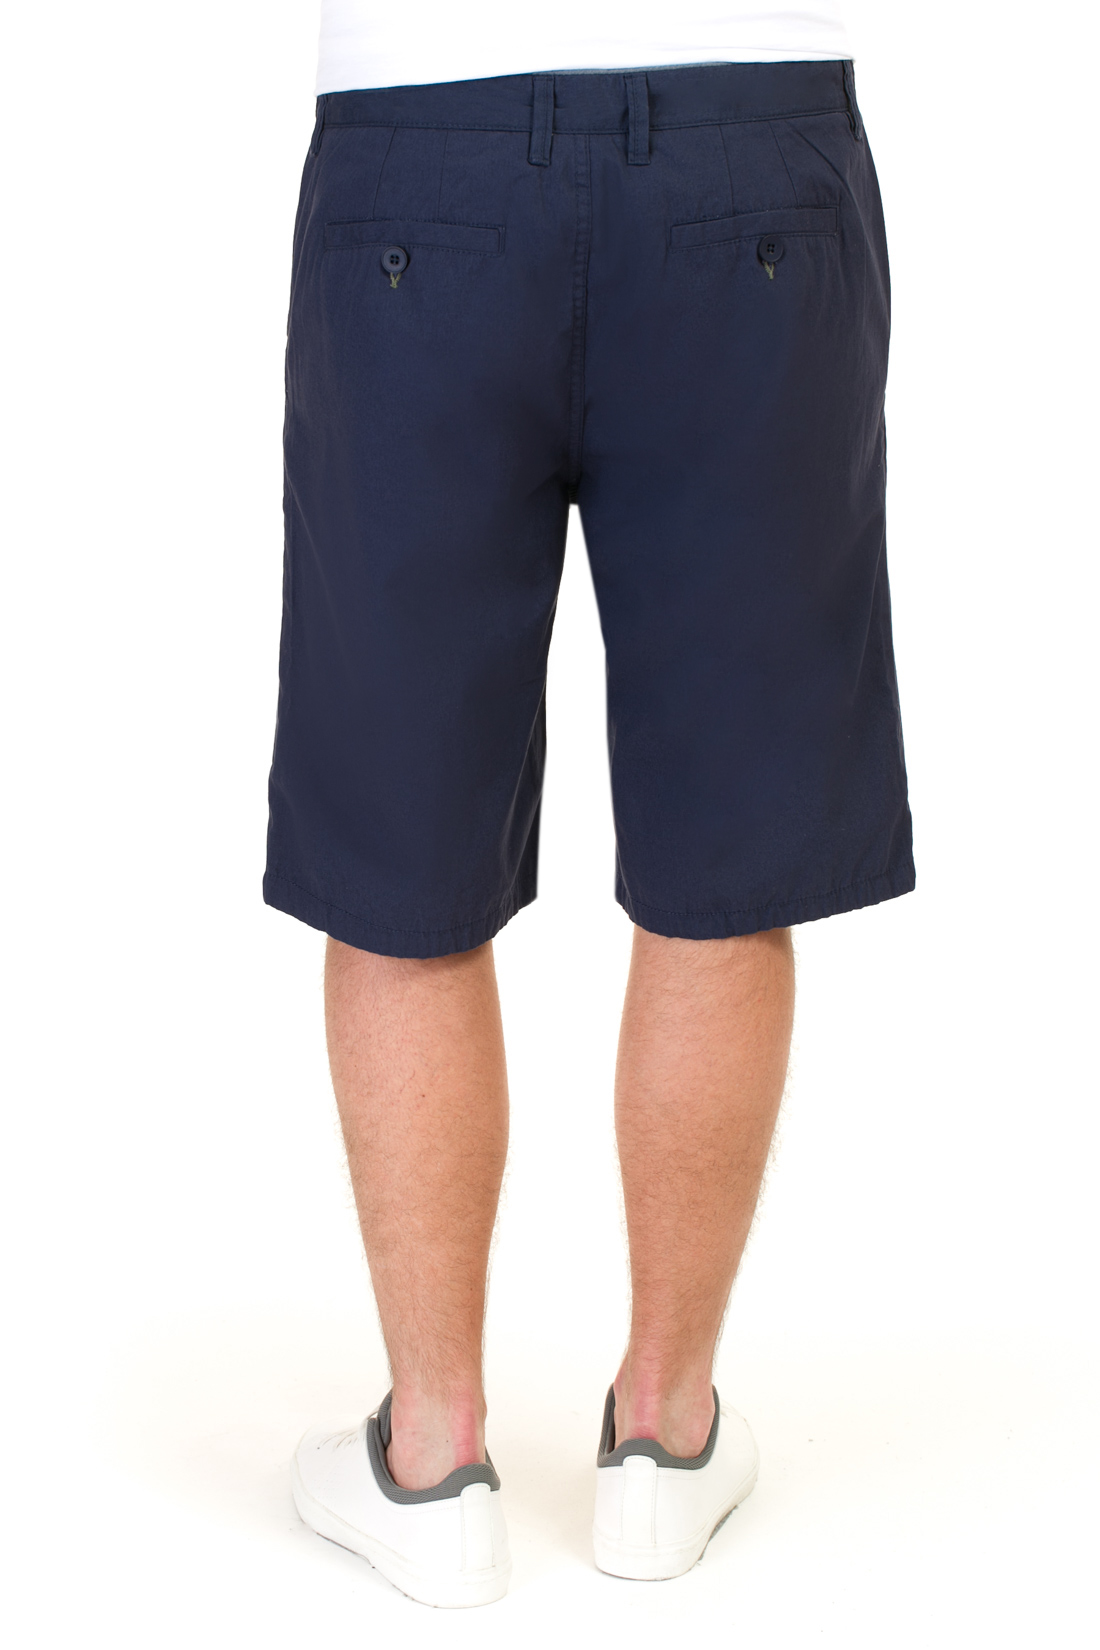 Длинные шорты из хлопка (арт. baon B827008), размер 36, цвет синий Длинные шорты из хлопка (арт. baon B827008) - фото 2